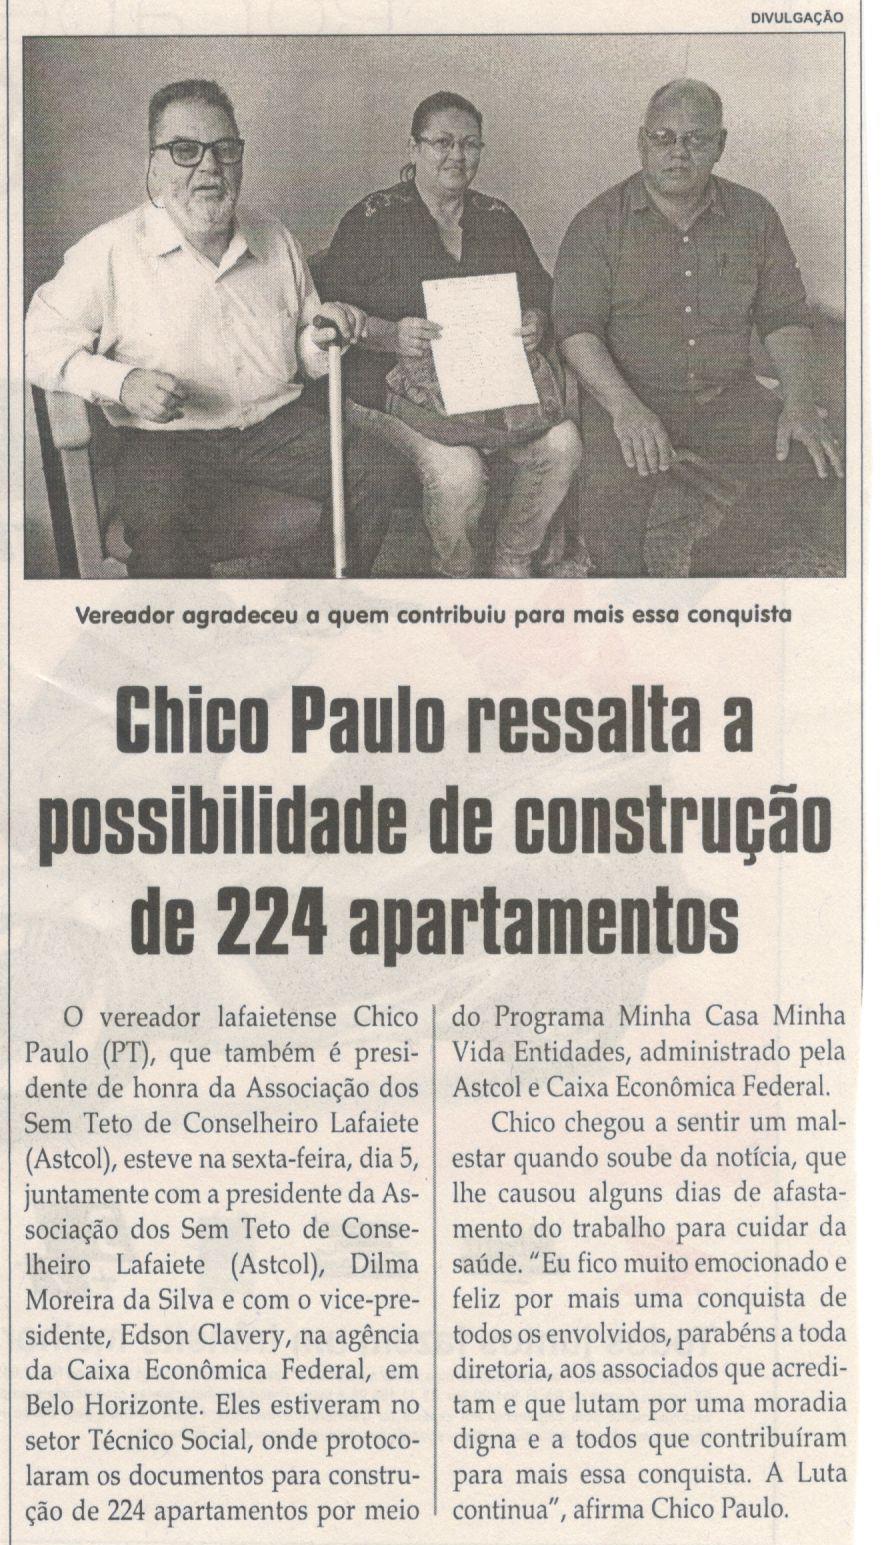 Chico Paulo ressalta a possibilidade de construção de 224 apartamentos. Jornal Correio da Cidade, Conselheiro Lafaiete, 13 mai. 2017 a 19 mai. 2017, 1369ª ed., Caderno Política,p. 4.